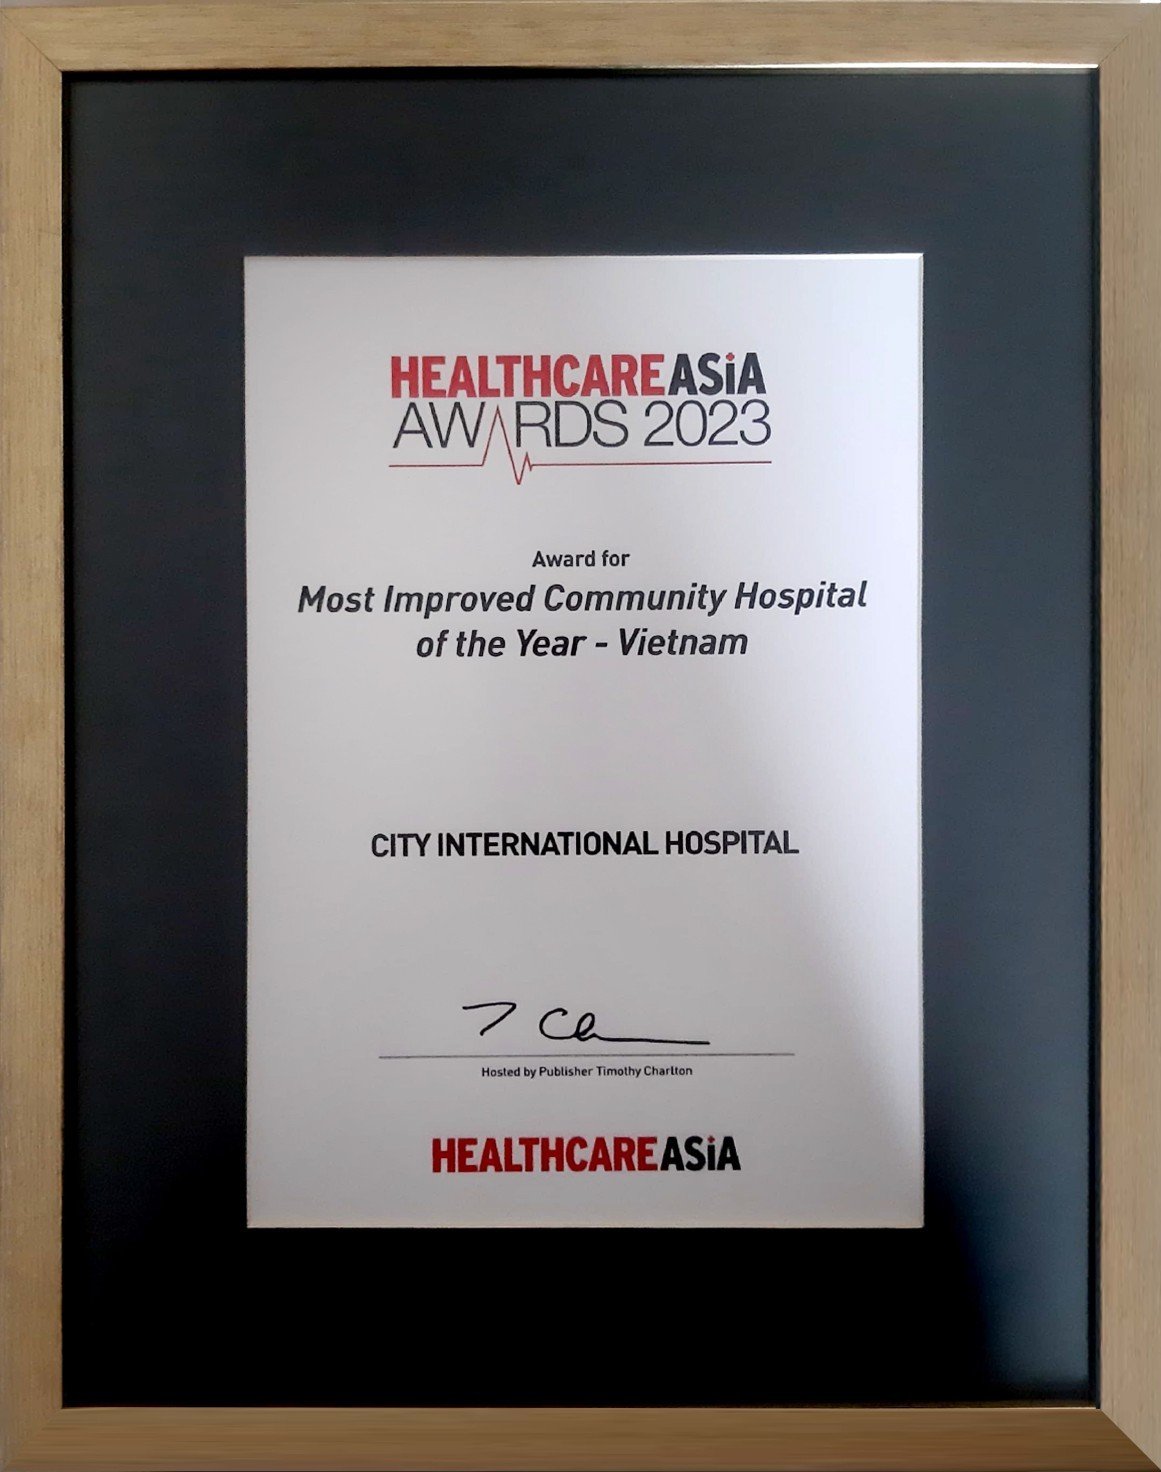 Hai Bệnh viện đa khoa tư nhân đầu tiên tại Việt Nam nhận được giải Healthcare Asia Award 2023